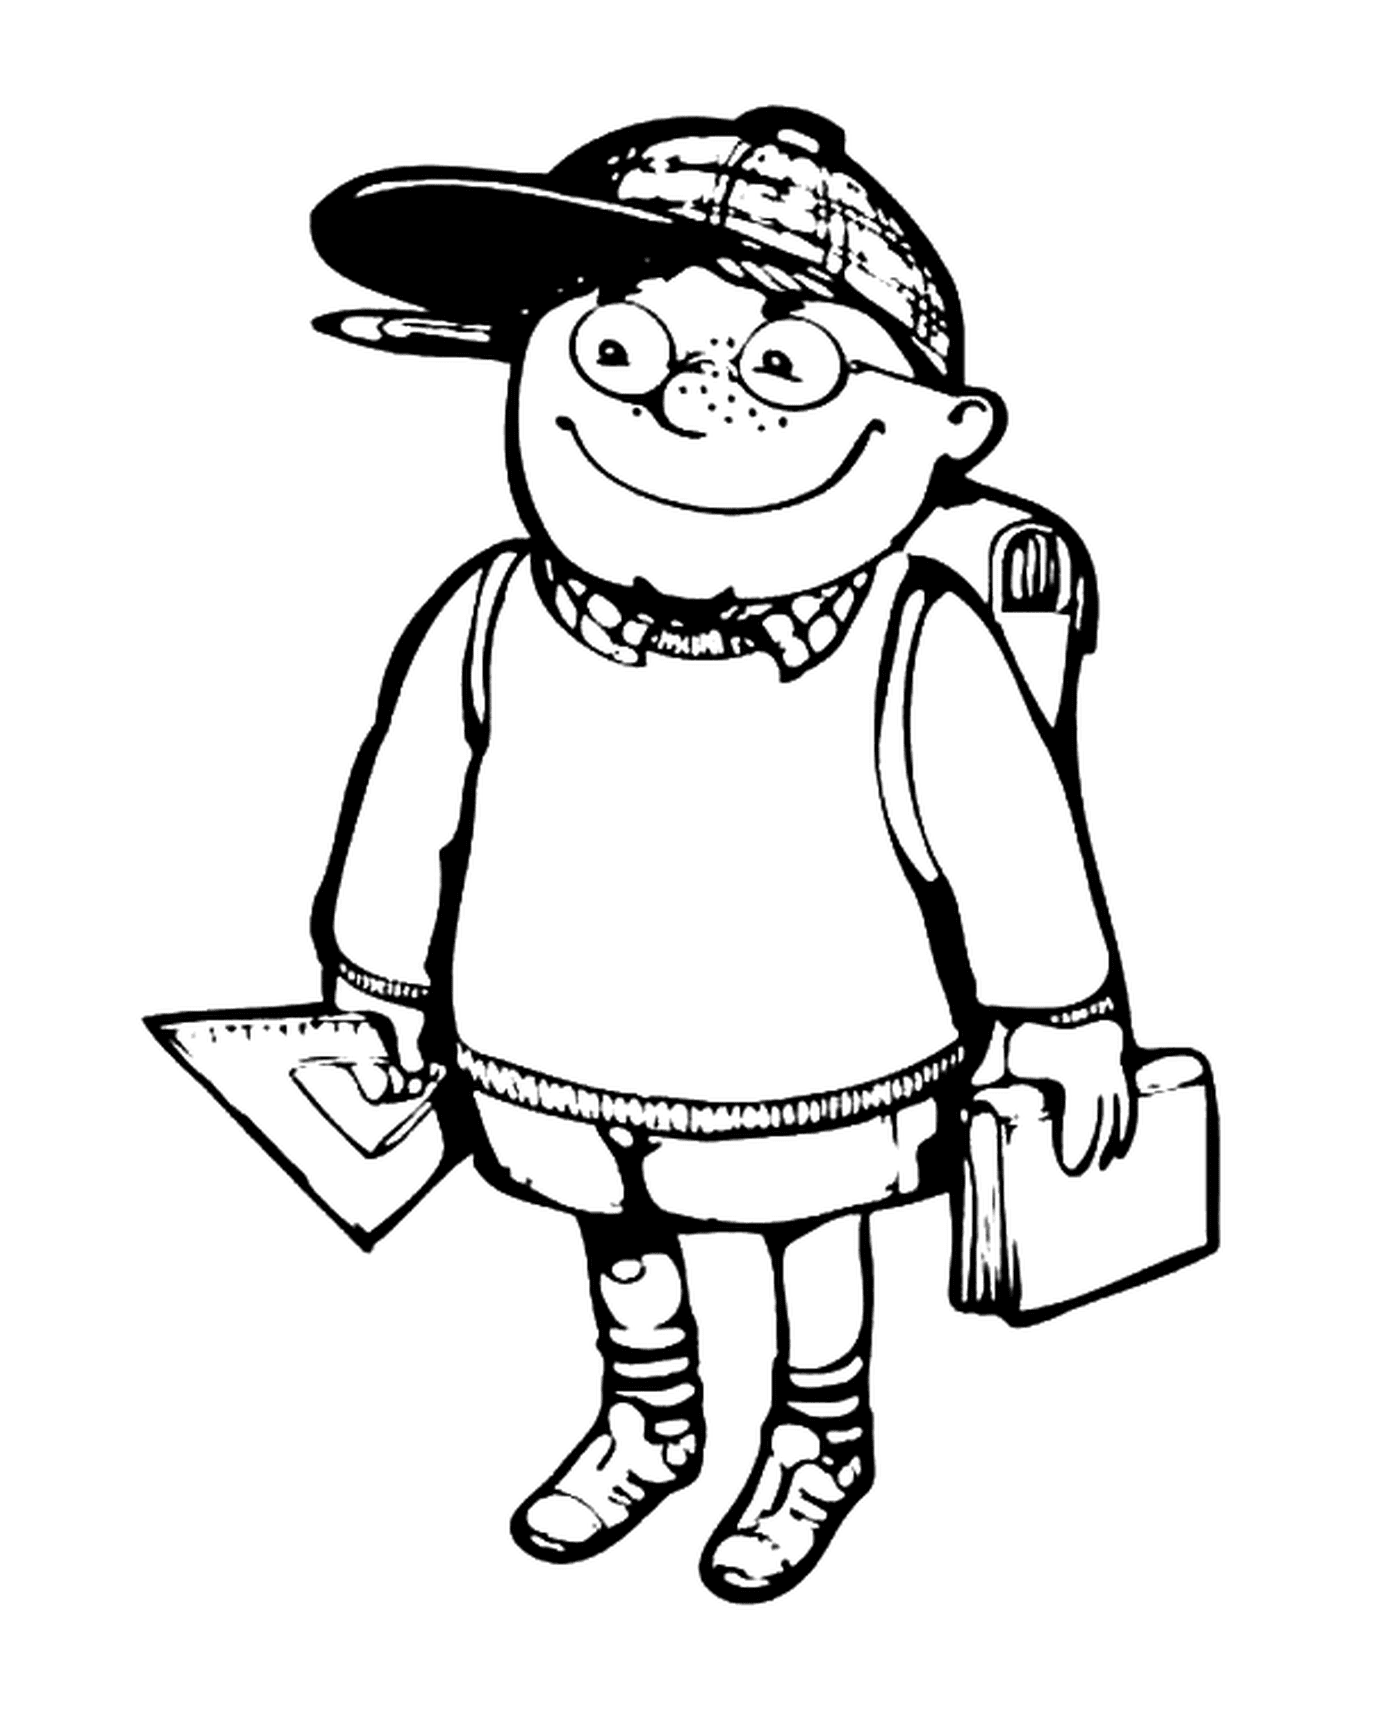  Un chico va a la escuela con una mochila 